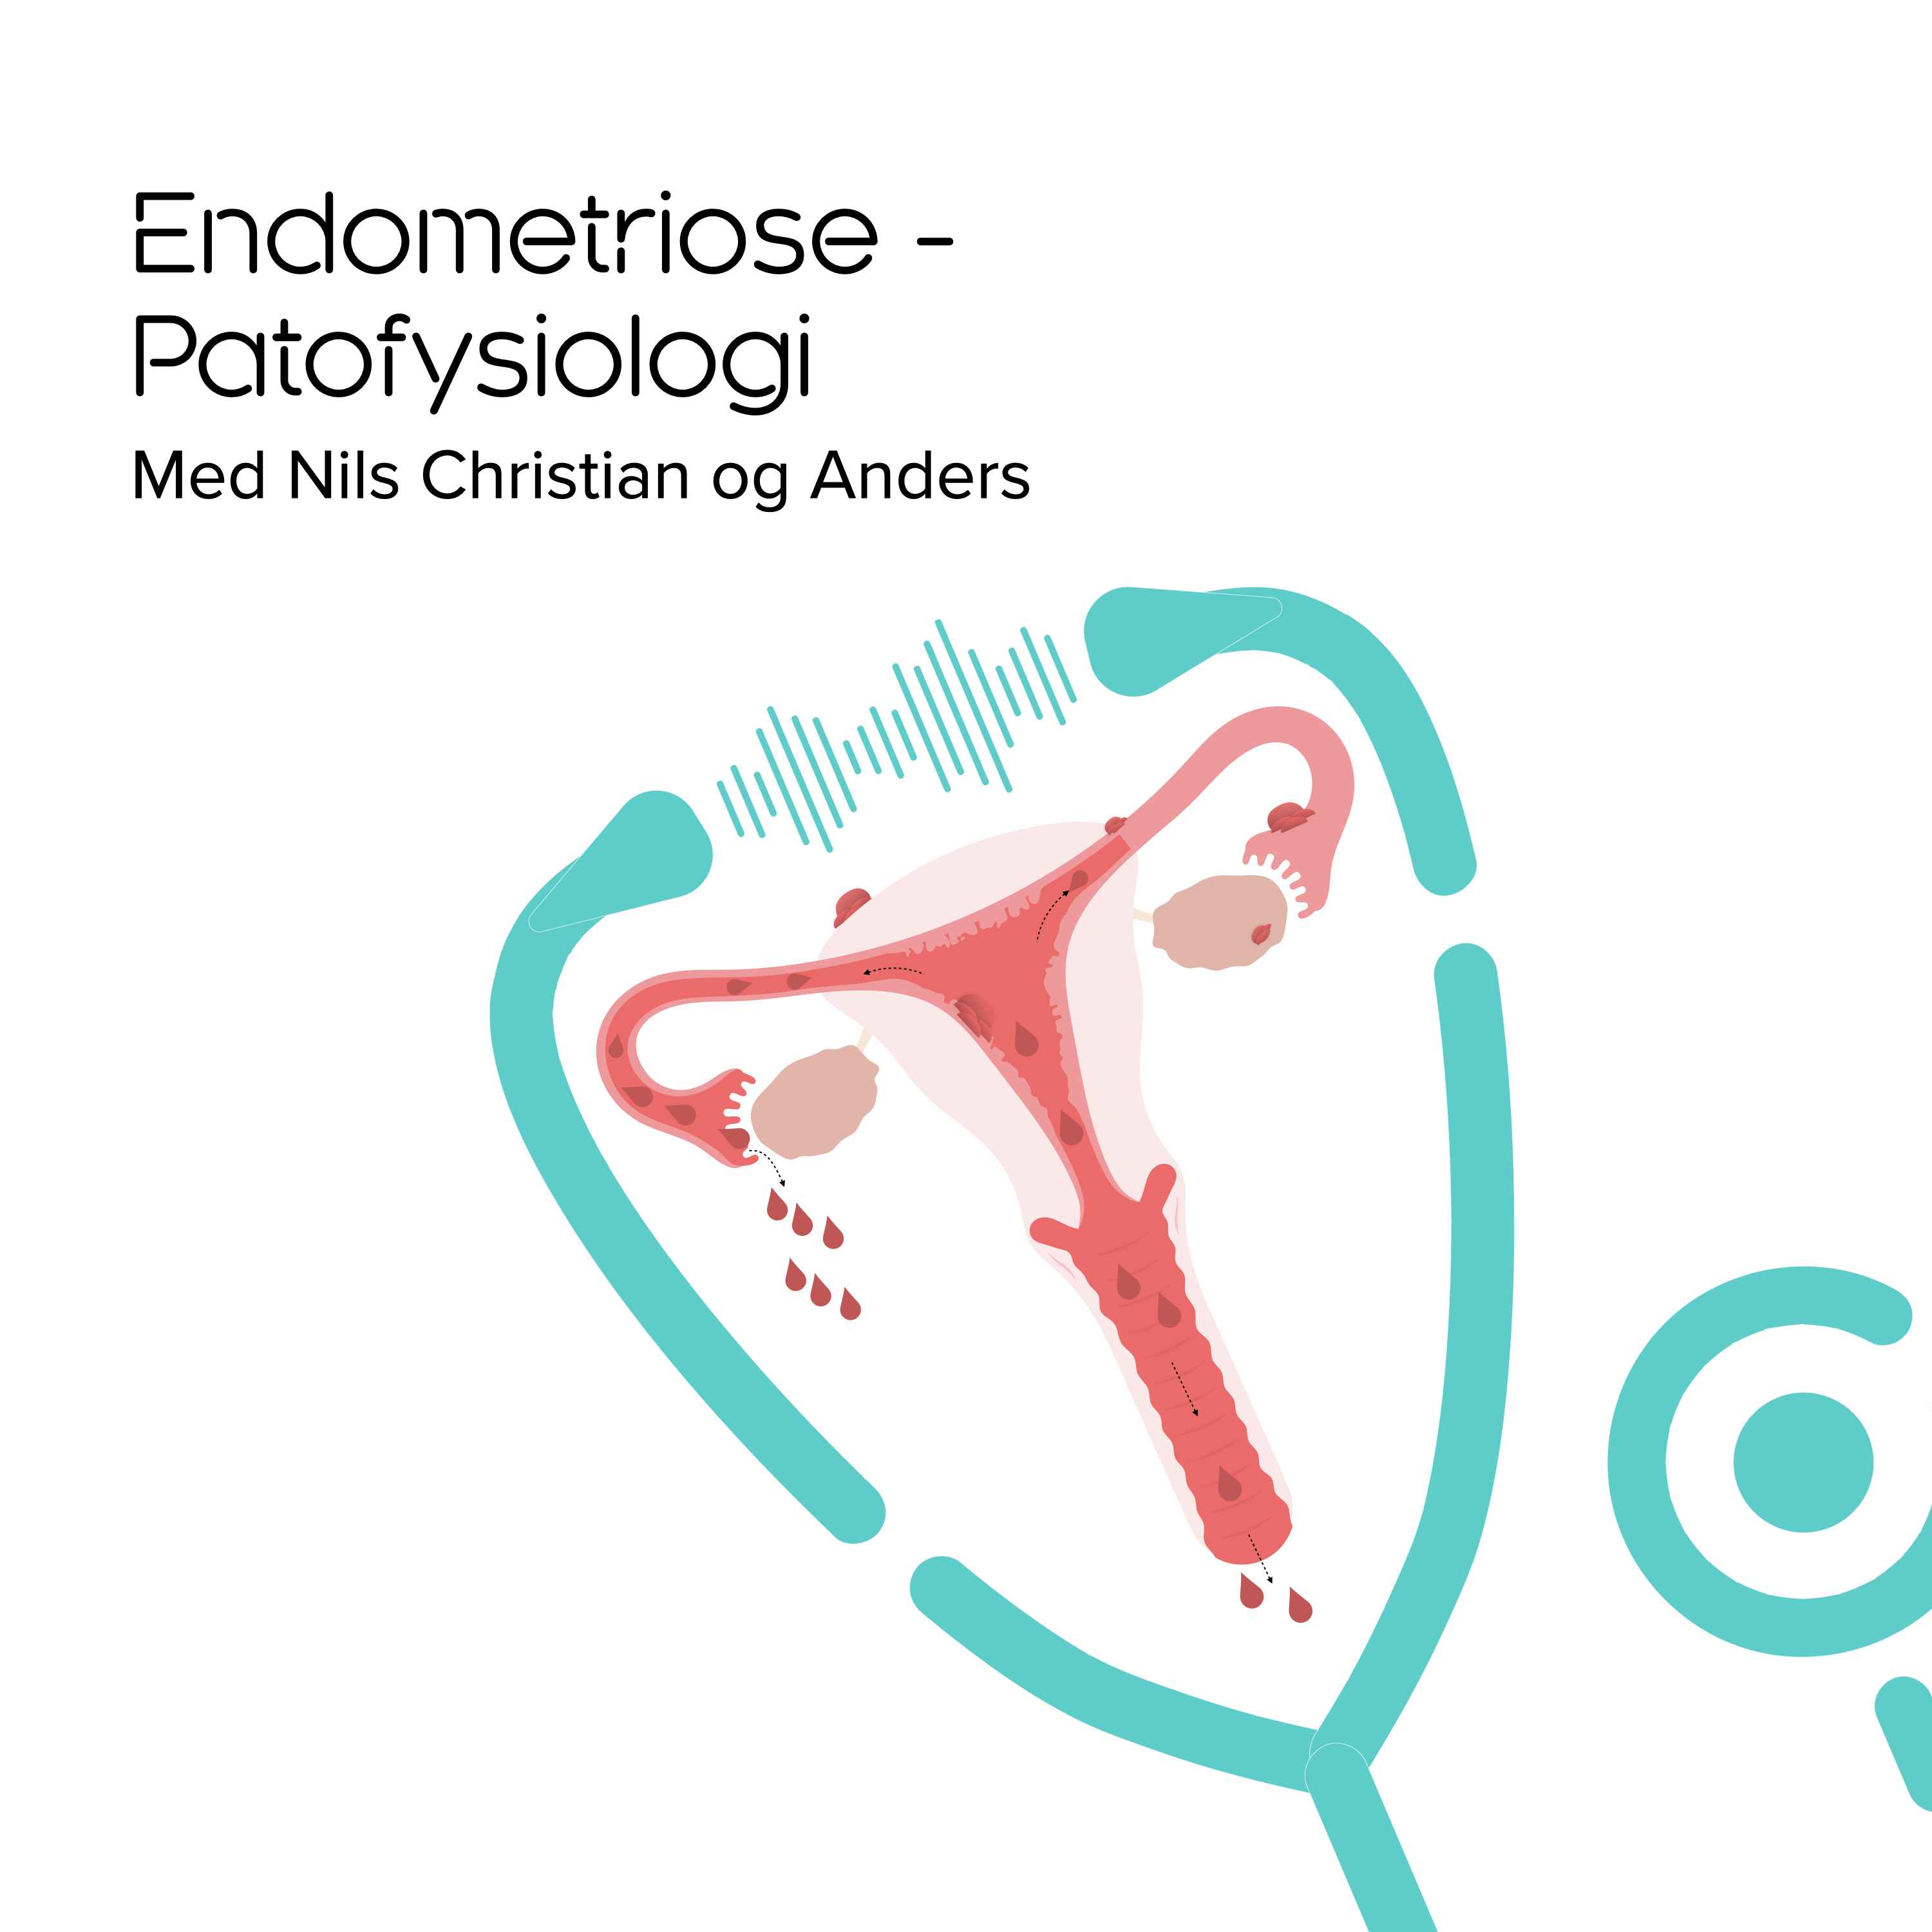 Endometriose - patofysiologi